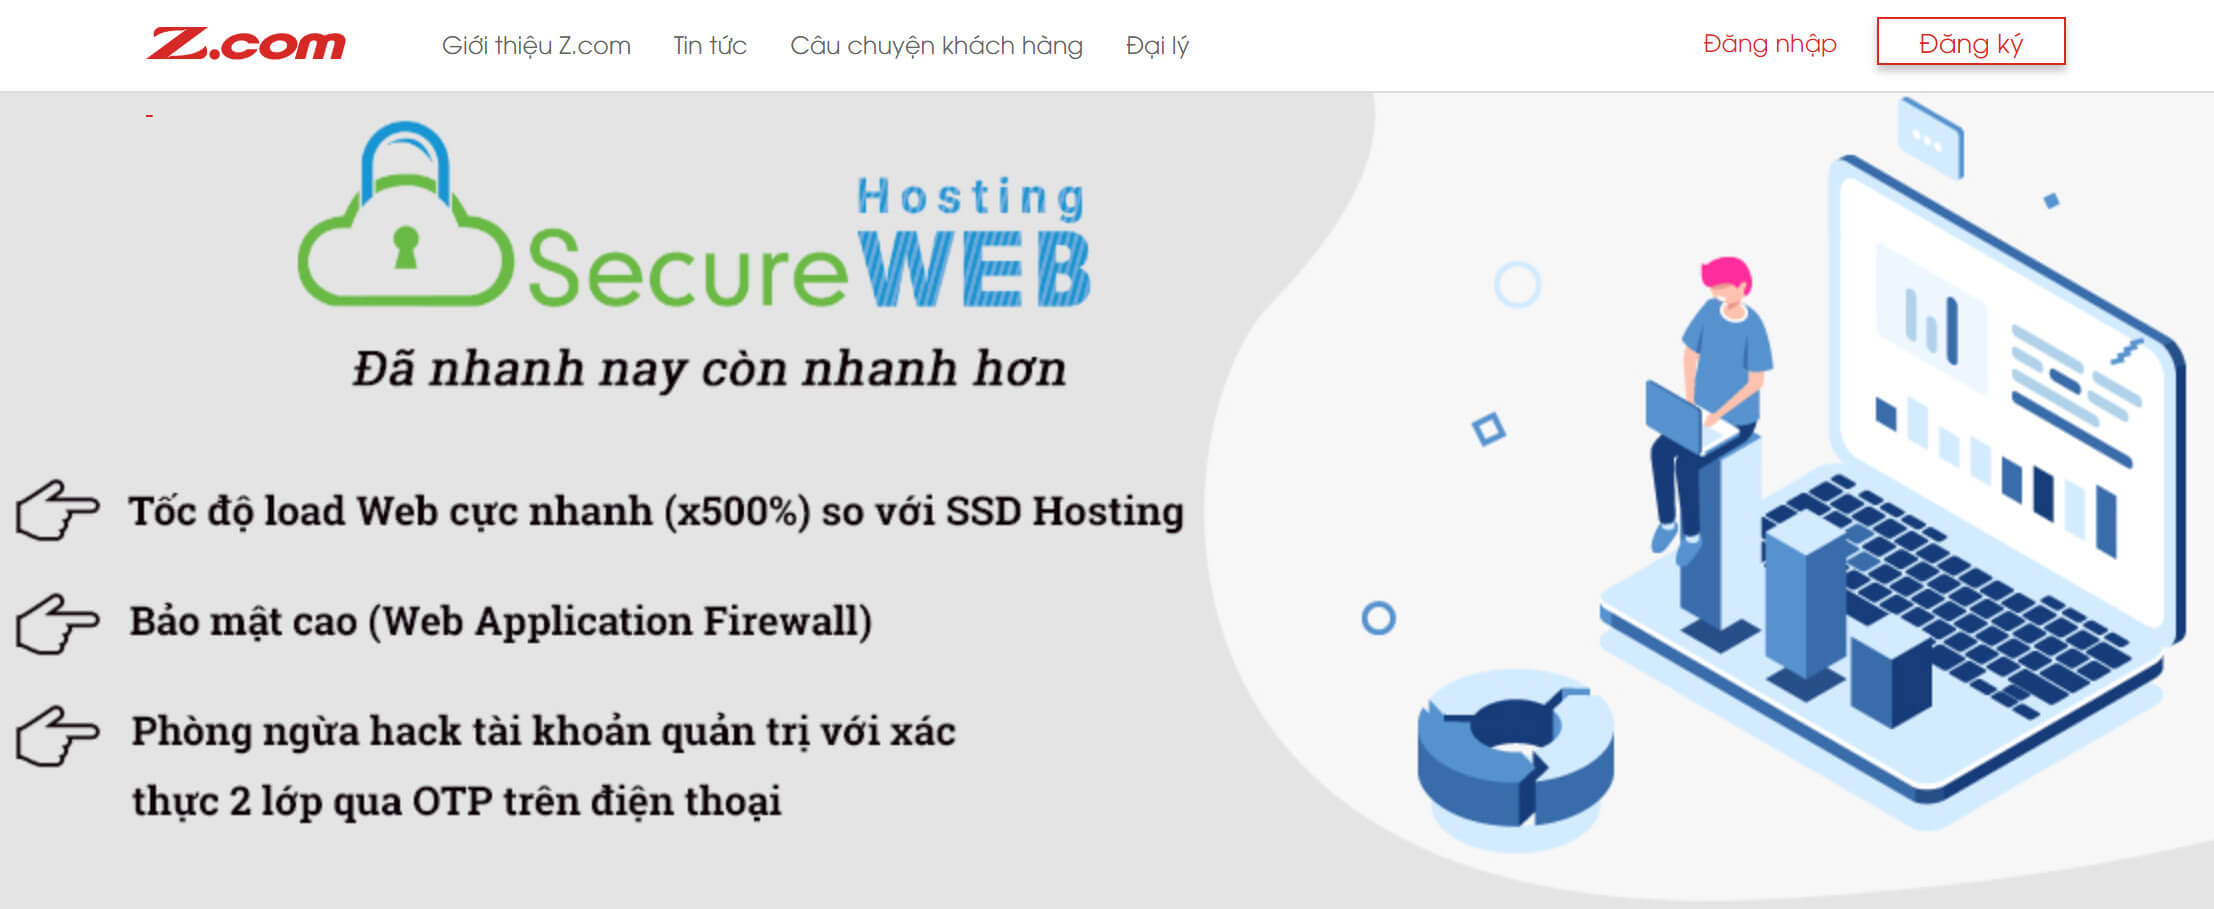 Mua domain, hosting, vps giá rẻ tại Zcom 